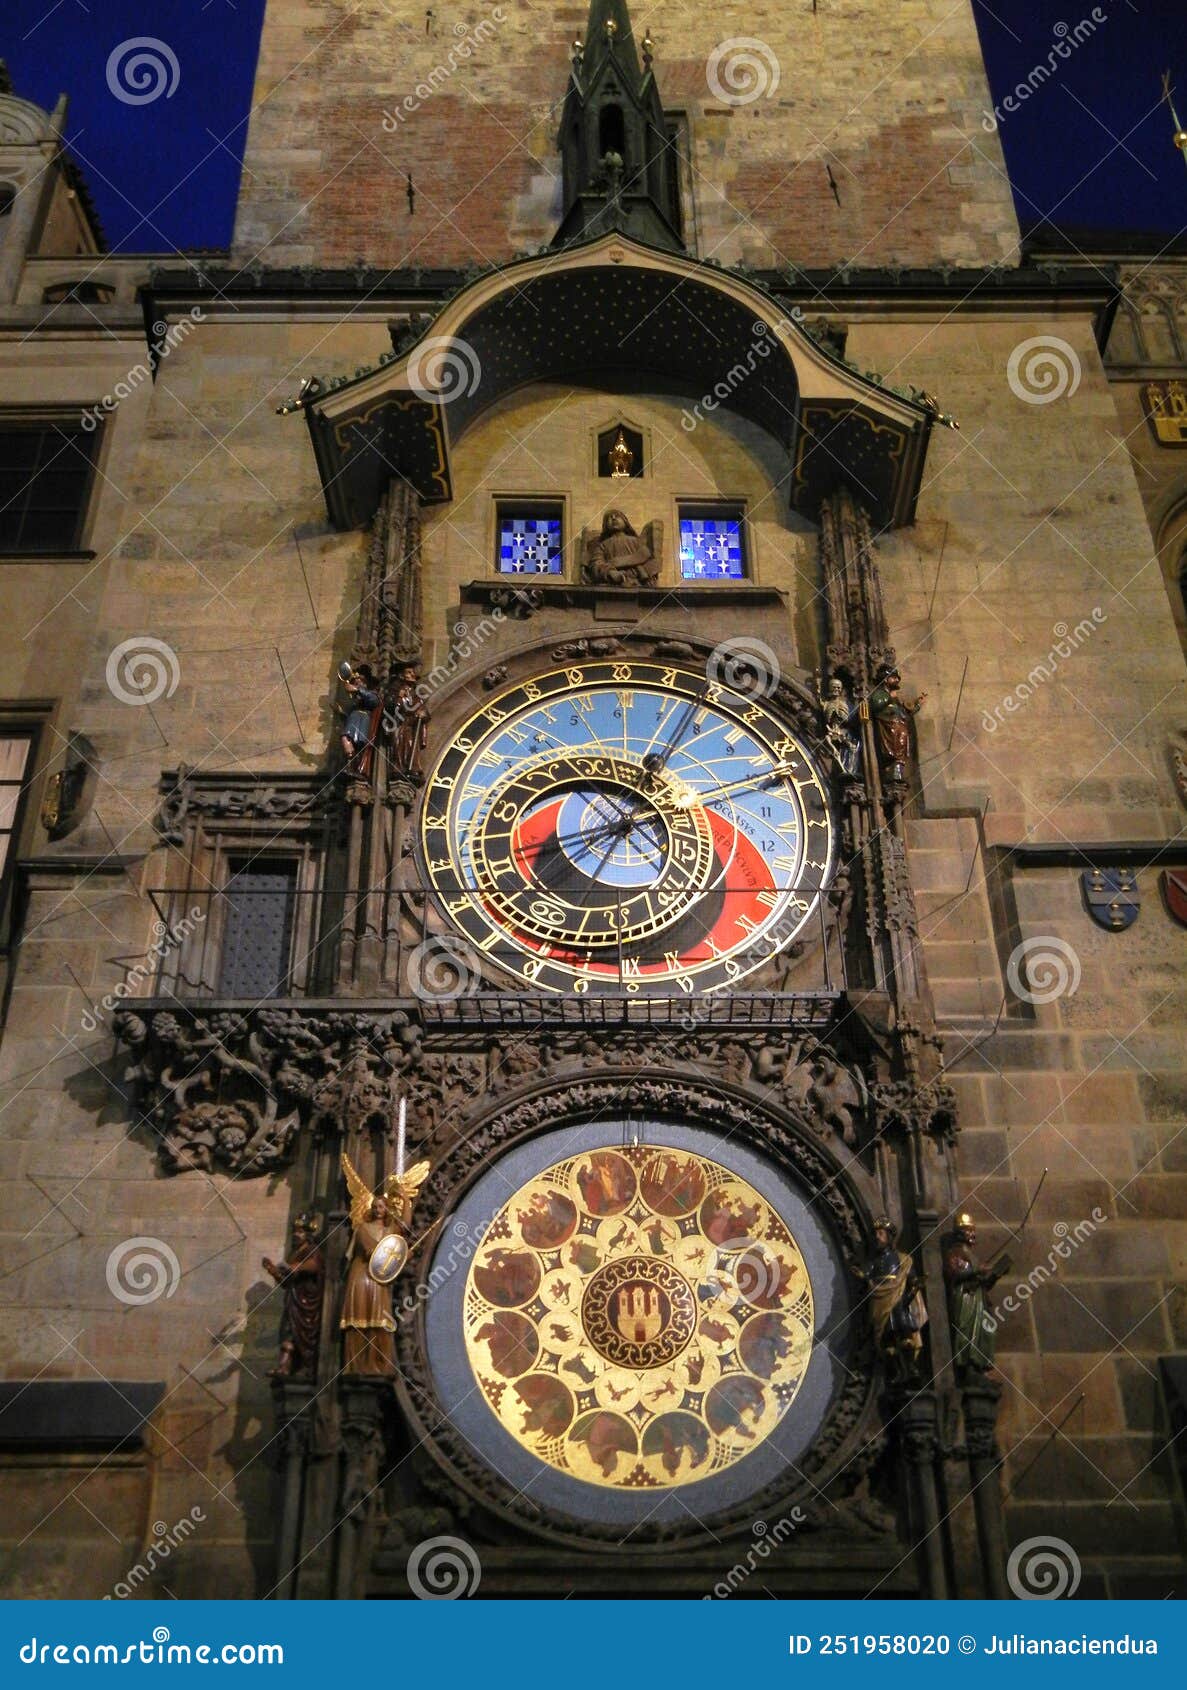 the prague astronomical clock or prague orloj